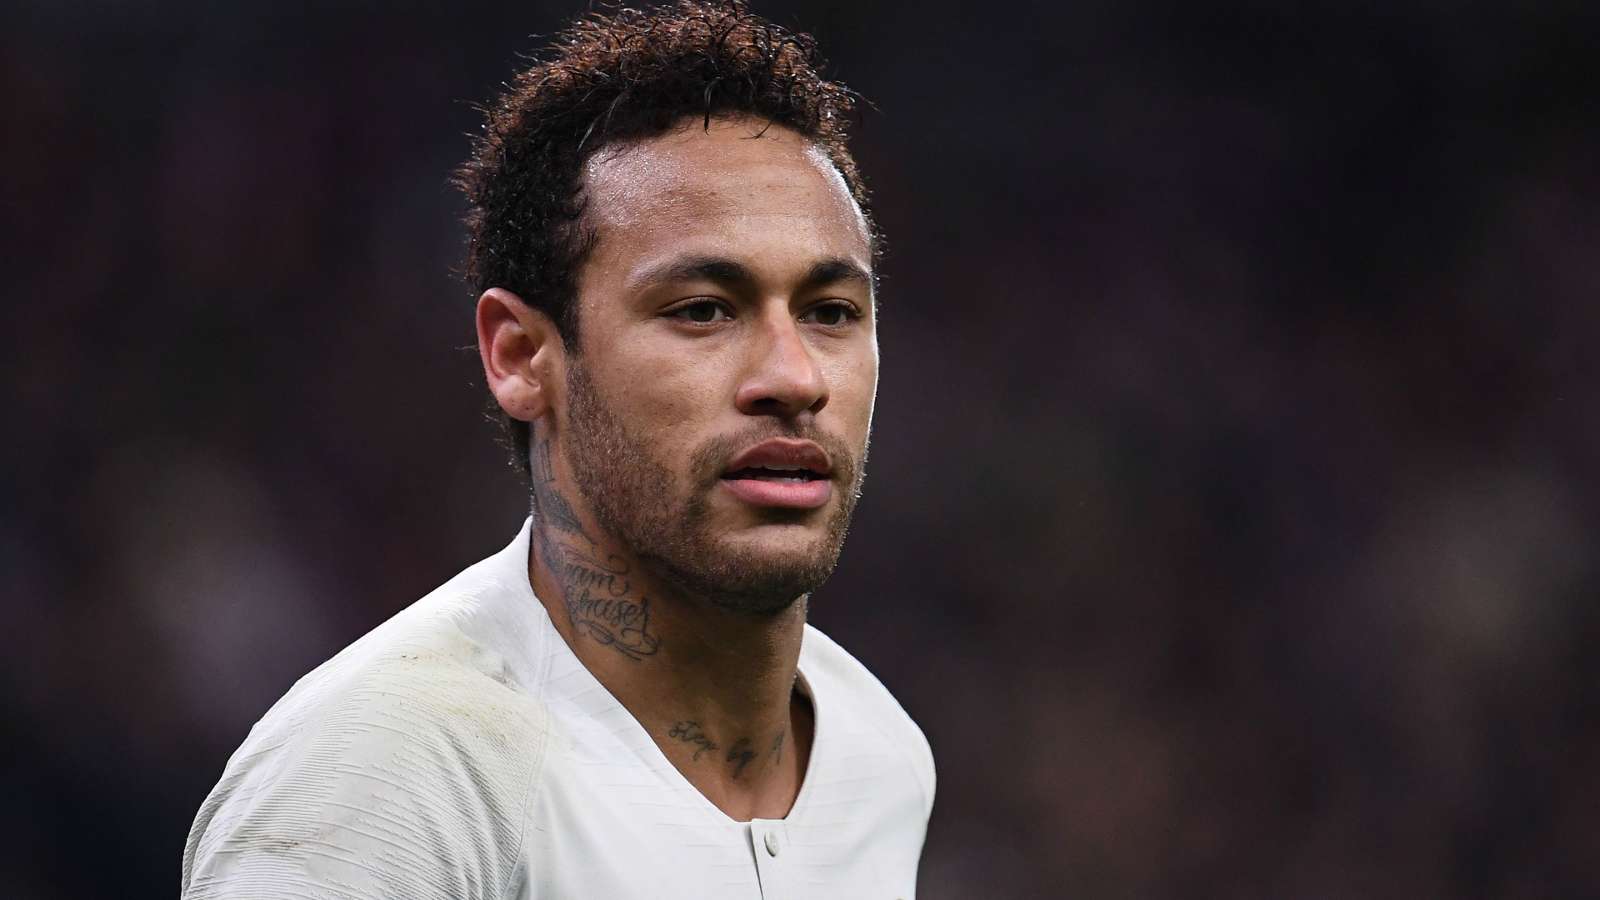 Neymar ra oai, dạy dỗ những cầu thủ như Mbappe: 